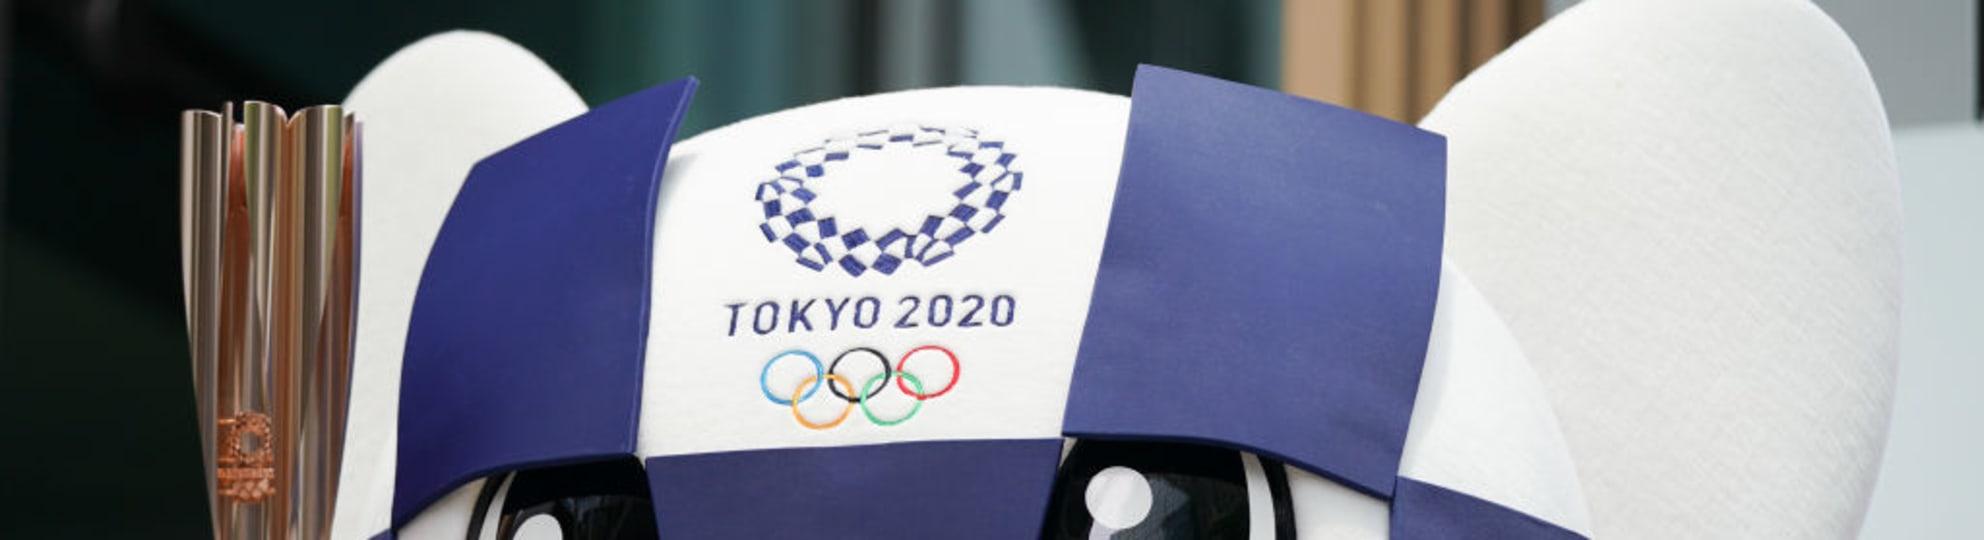 東京オリンピックチケットの販売はいつまで スケジュールを徹底解説